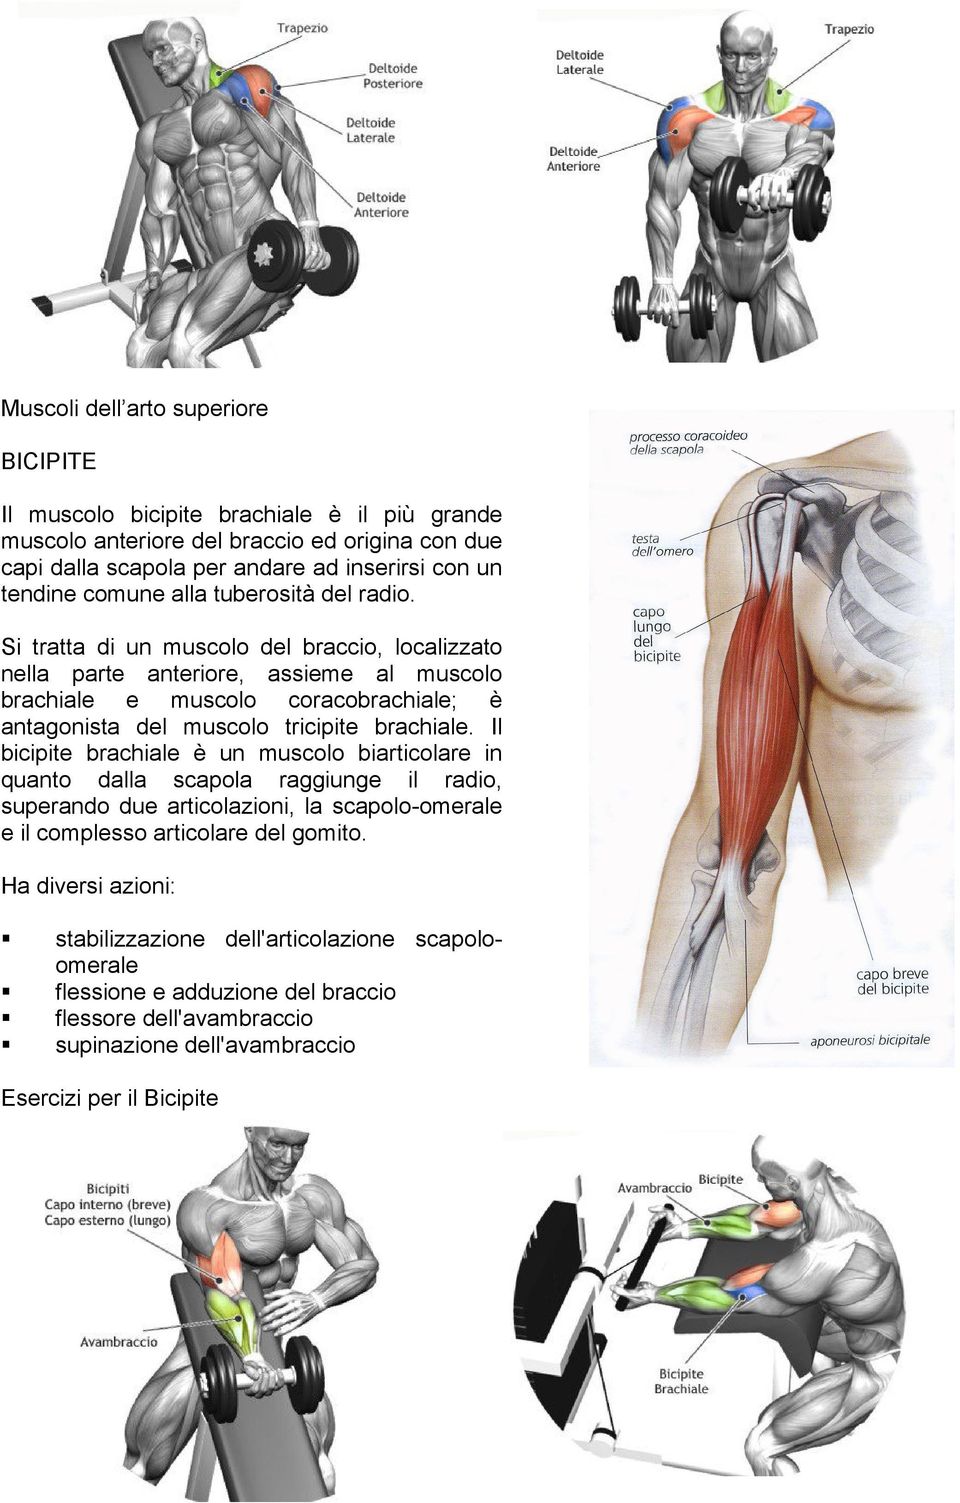 Si tratta di un muscolo del braccio, localizzato nella parte anteriore, assieme al muscolo brachiale e muscolo coracobrachiale; è antagonista del muscolo tricipite brachiale.